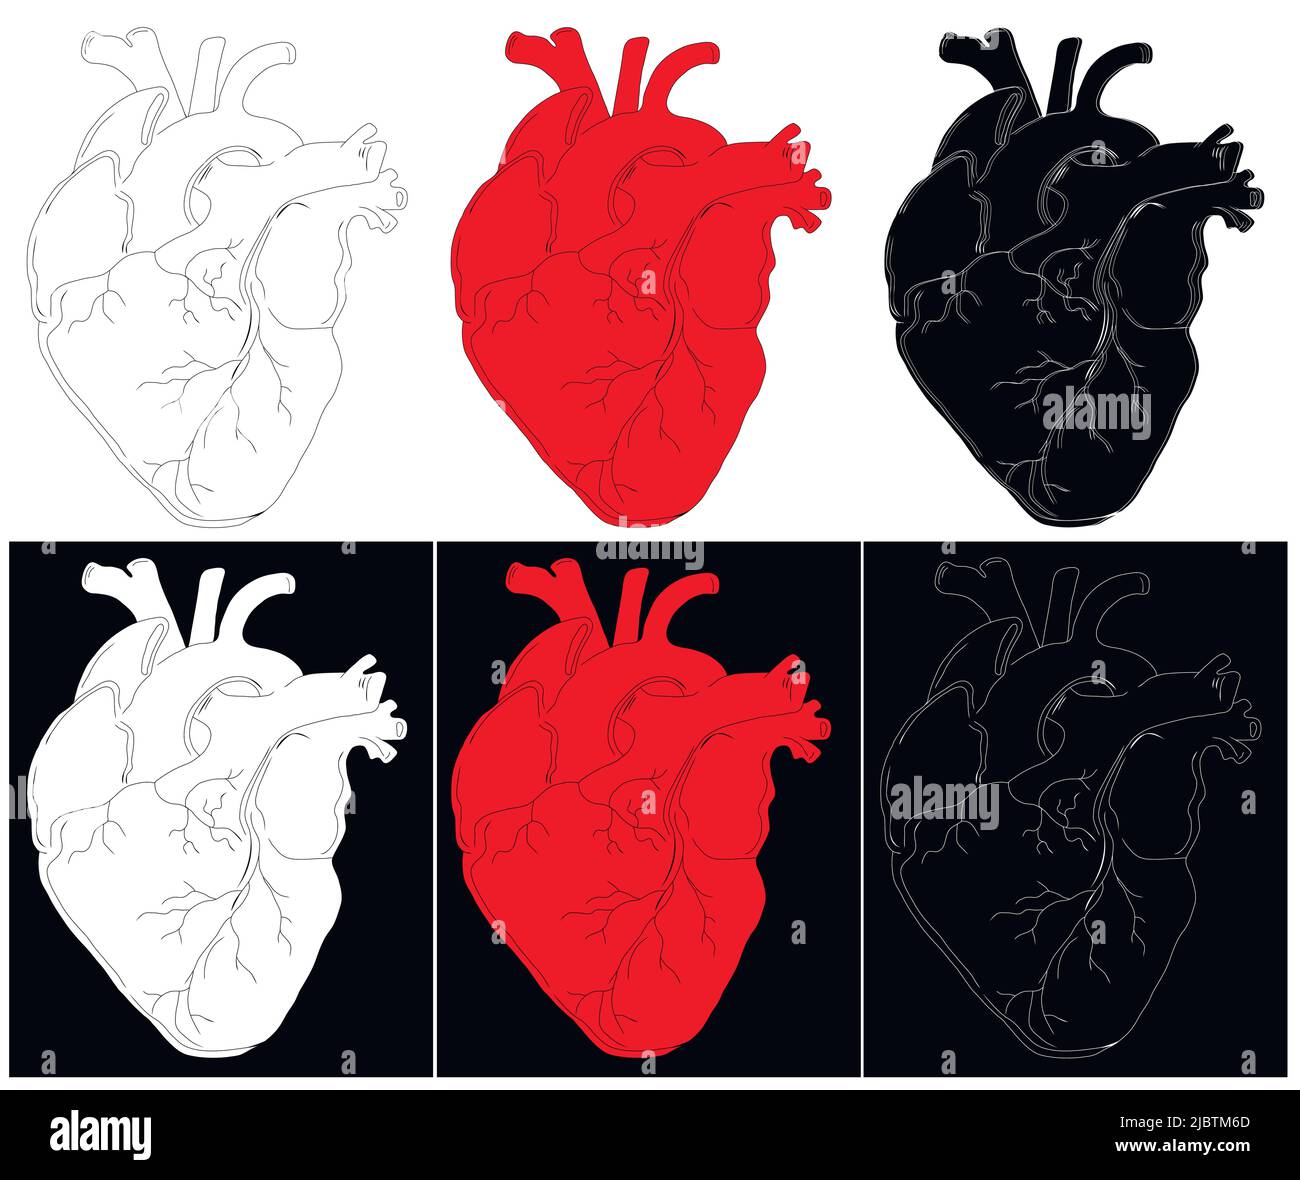 Anatomische Zeichnung des Herzens. Hintergrund für Broschüren, Broschüren, Flyer, Tattoo-Stuben. Set aus roten, weißen und schwarzen handgezeichneten Herzen. Stock Vektor